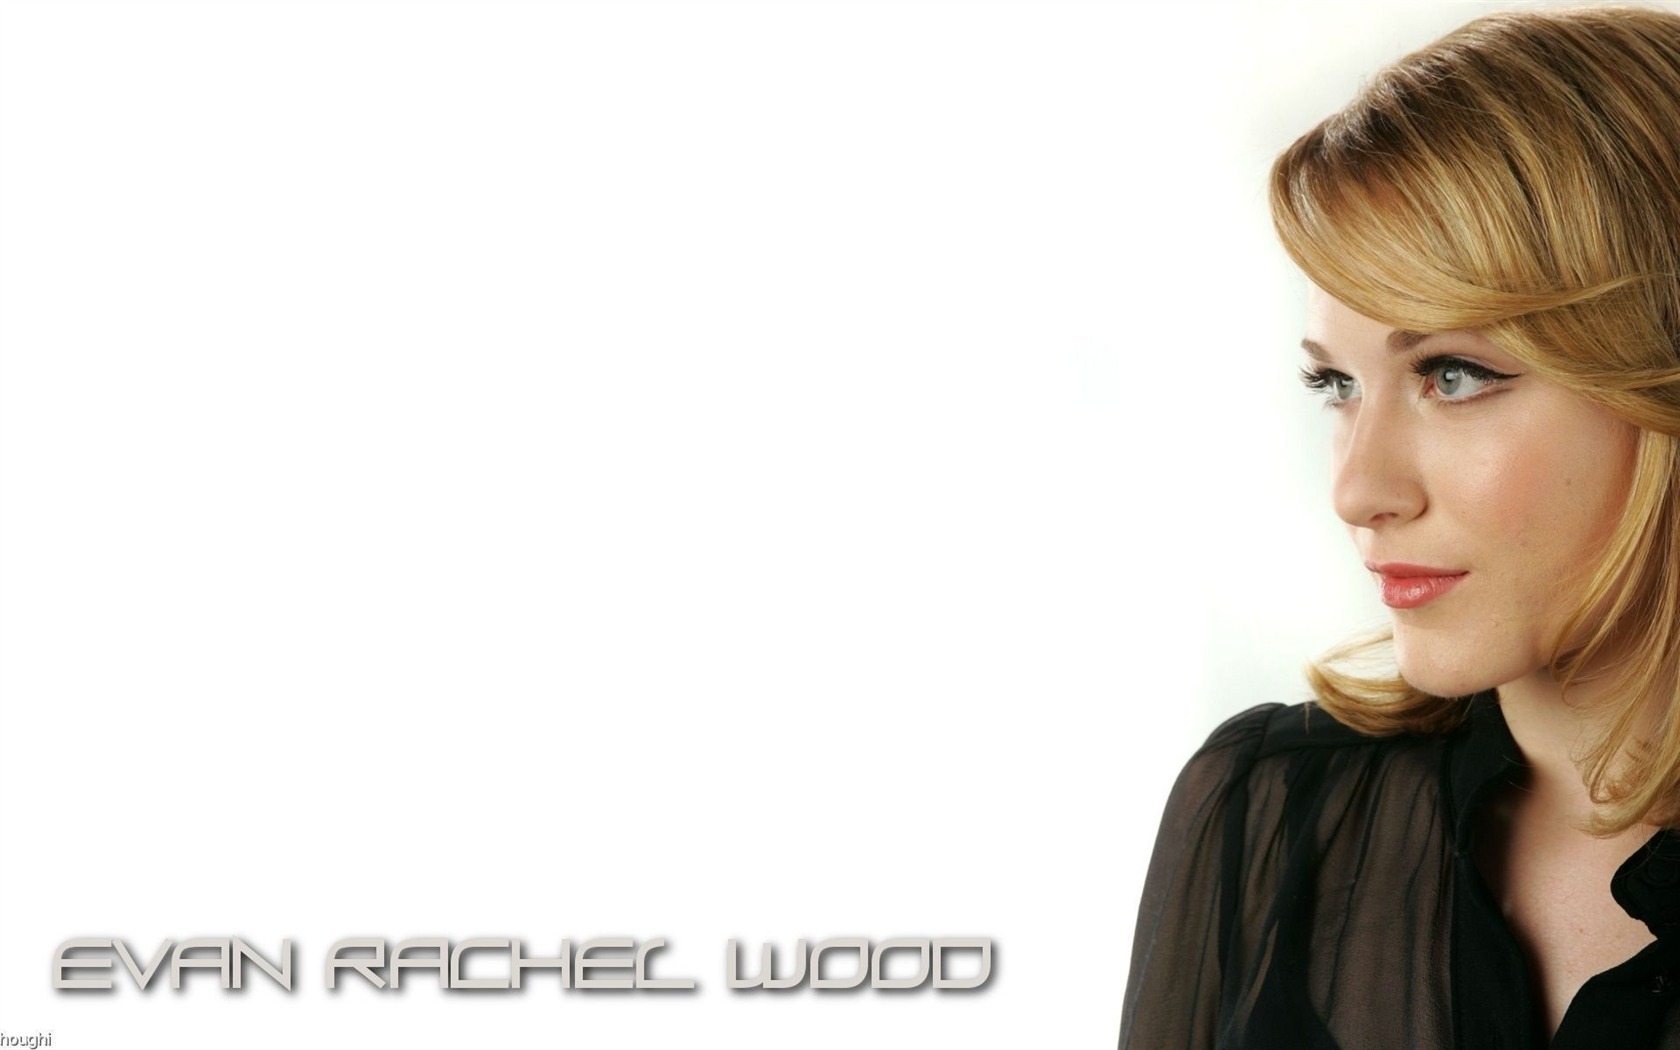 Evan Rachel Wood #002 - 1680x1050 Wallpapers Pictures Photos Images